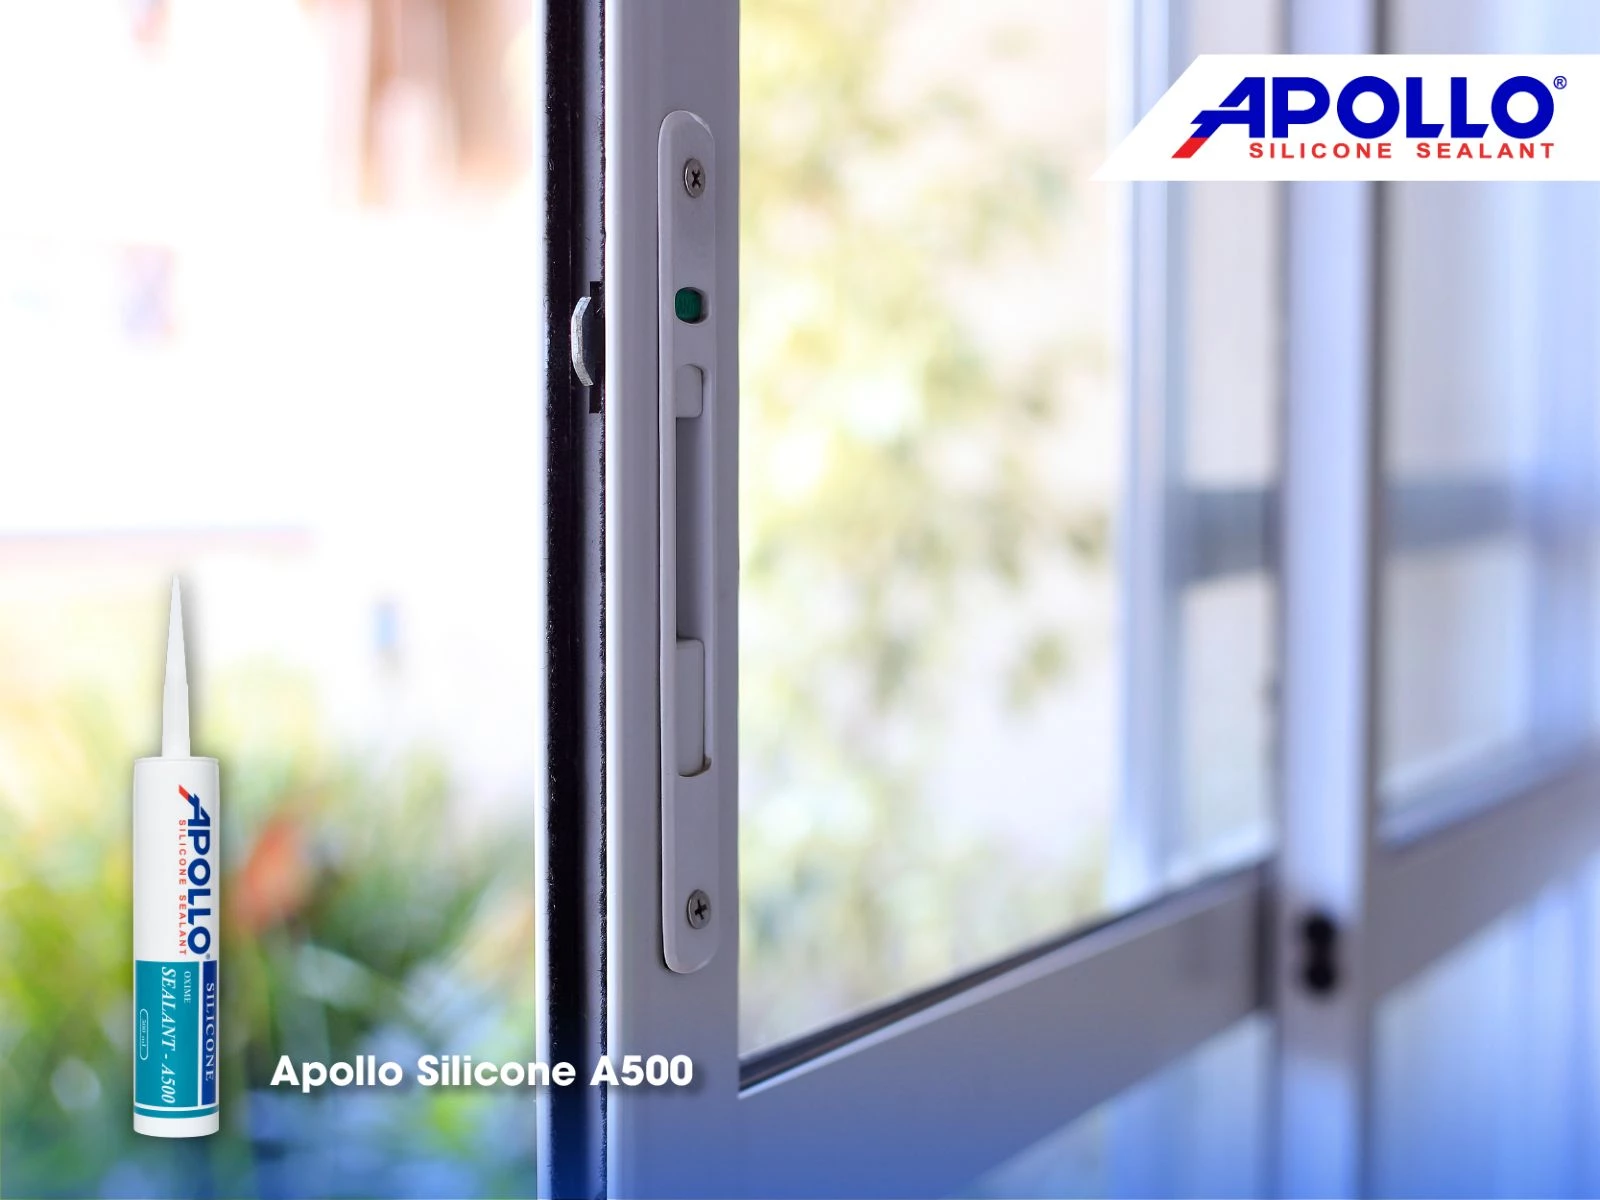 Các thợ thầu lành nghề rất tin dùng Apollo A500 cho việc trám trét khung cửa nhôm kính cường lực